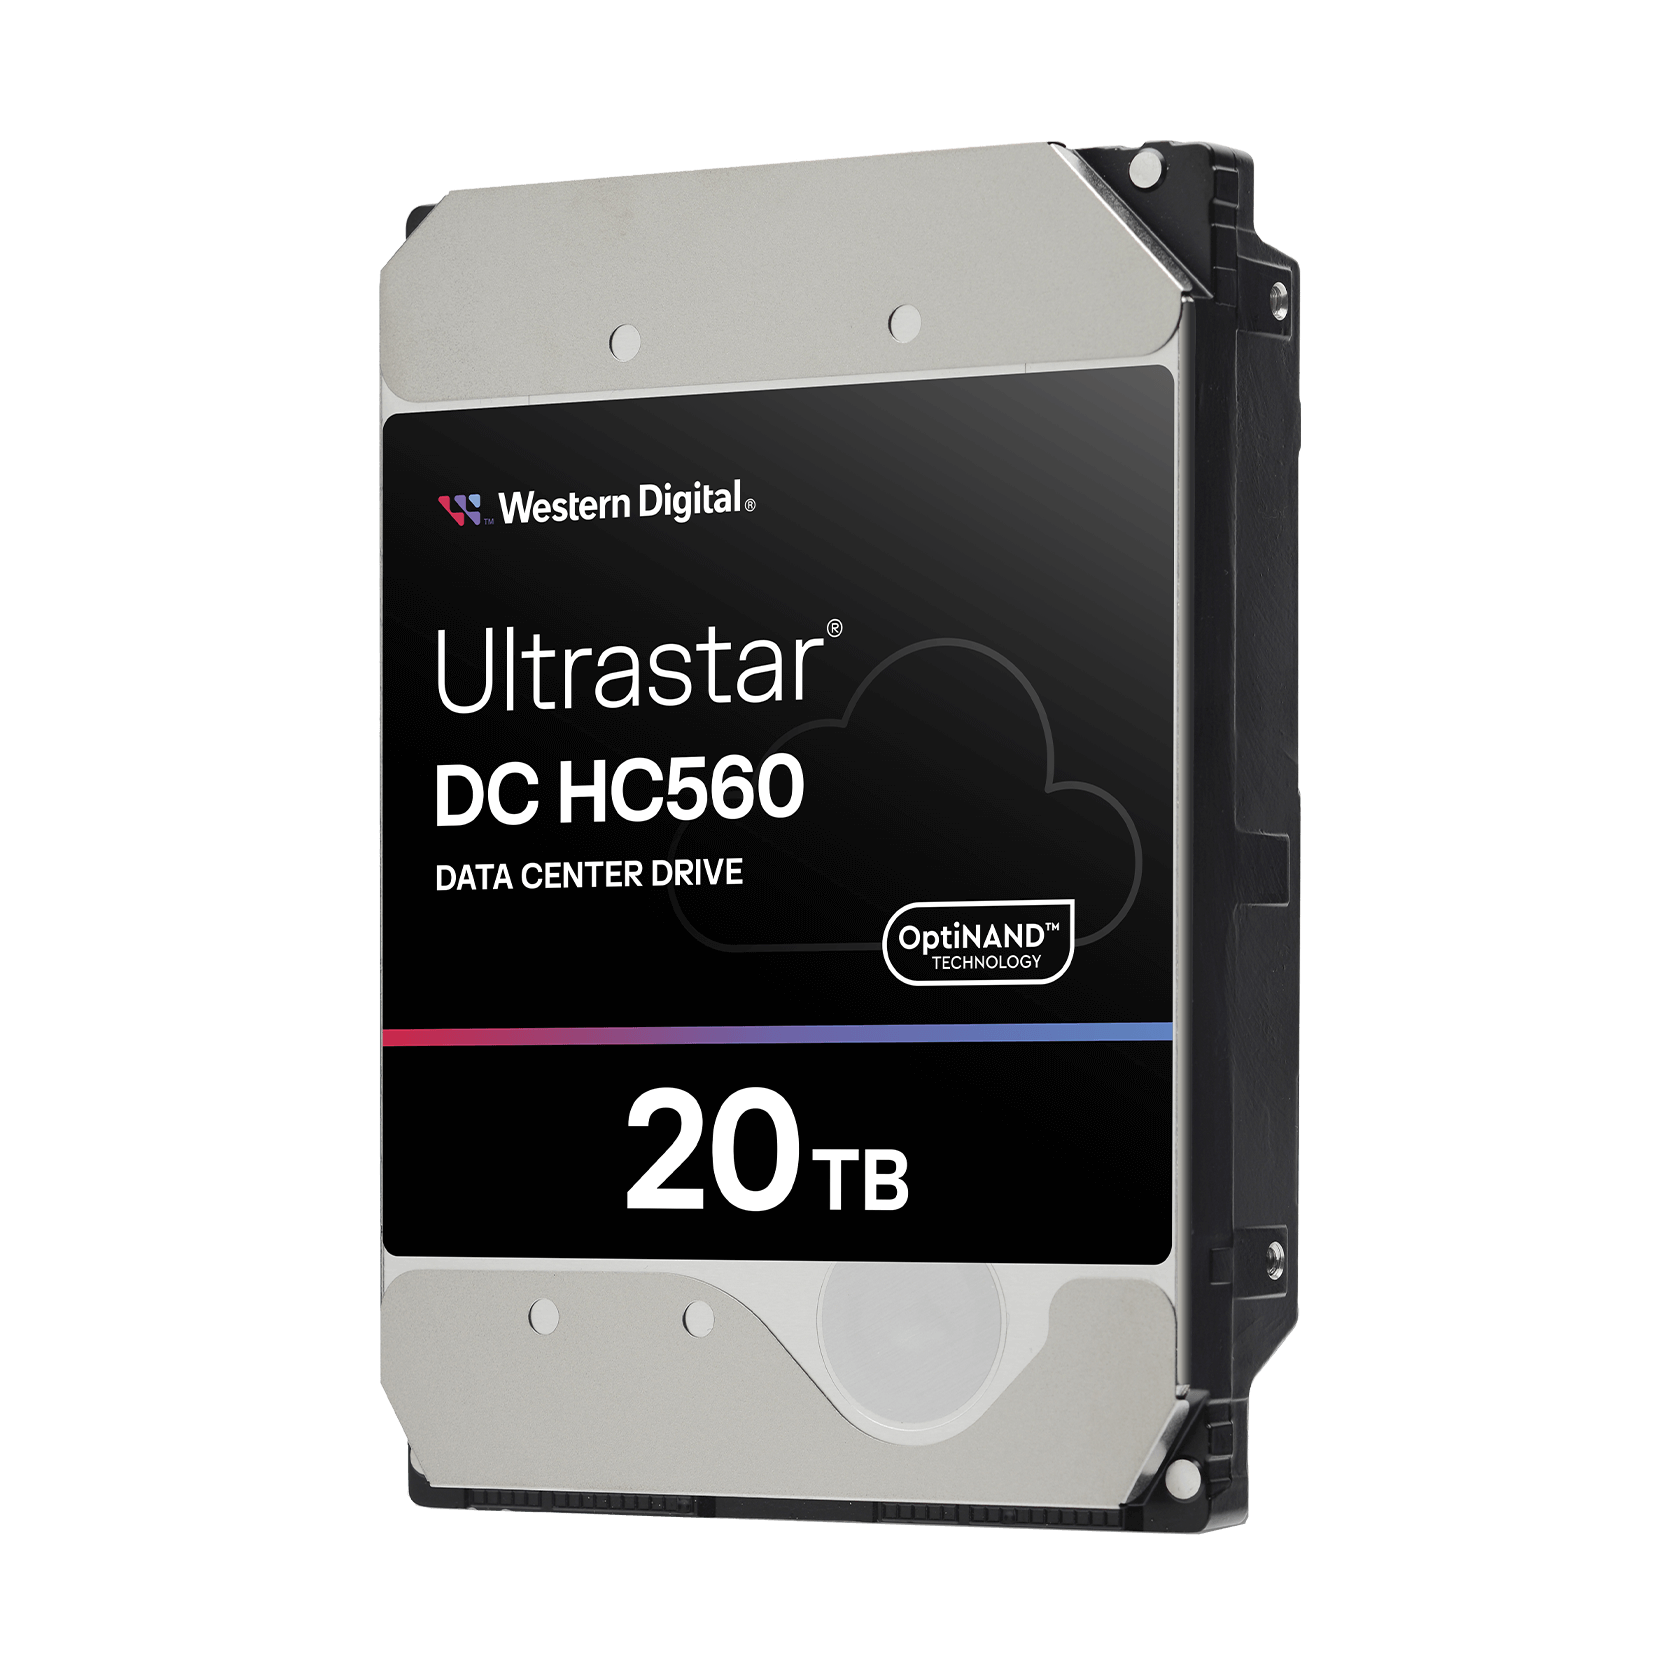 Ultrastar DC HC560 20TB Data Center Hard Drive | Digital